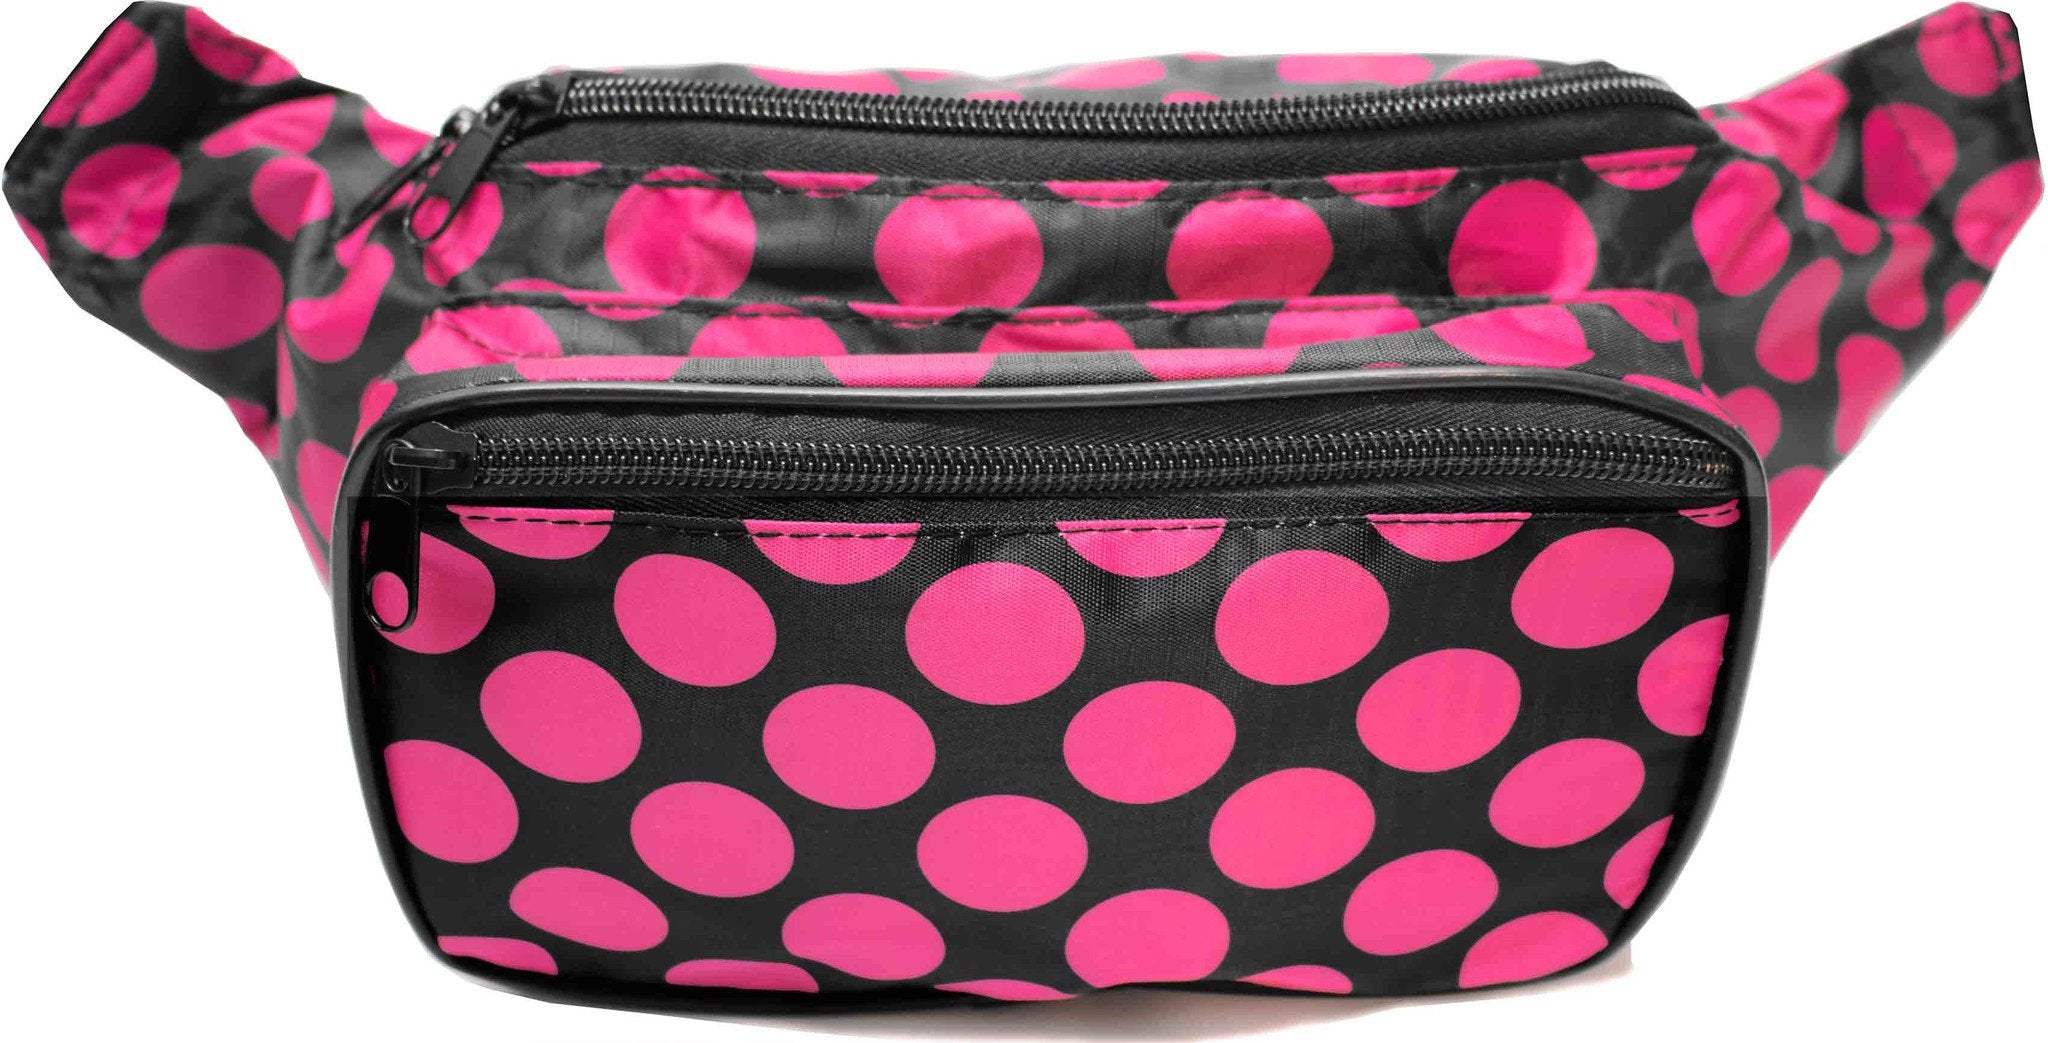 Polka Dot Black & Pink Fanny Pack – SoJourner Bags